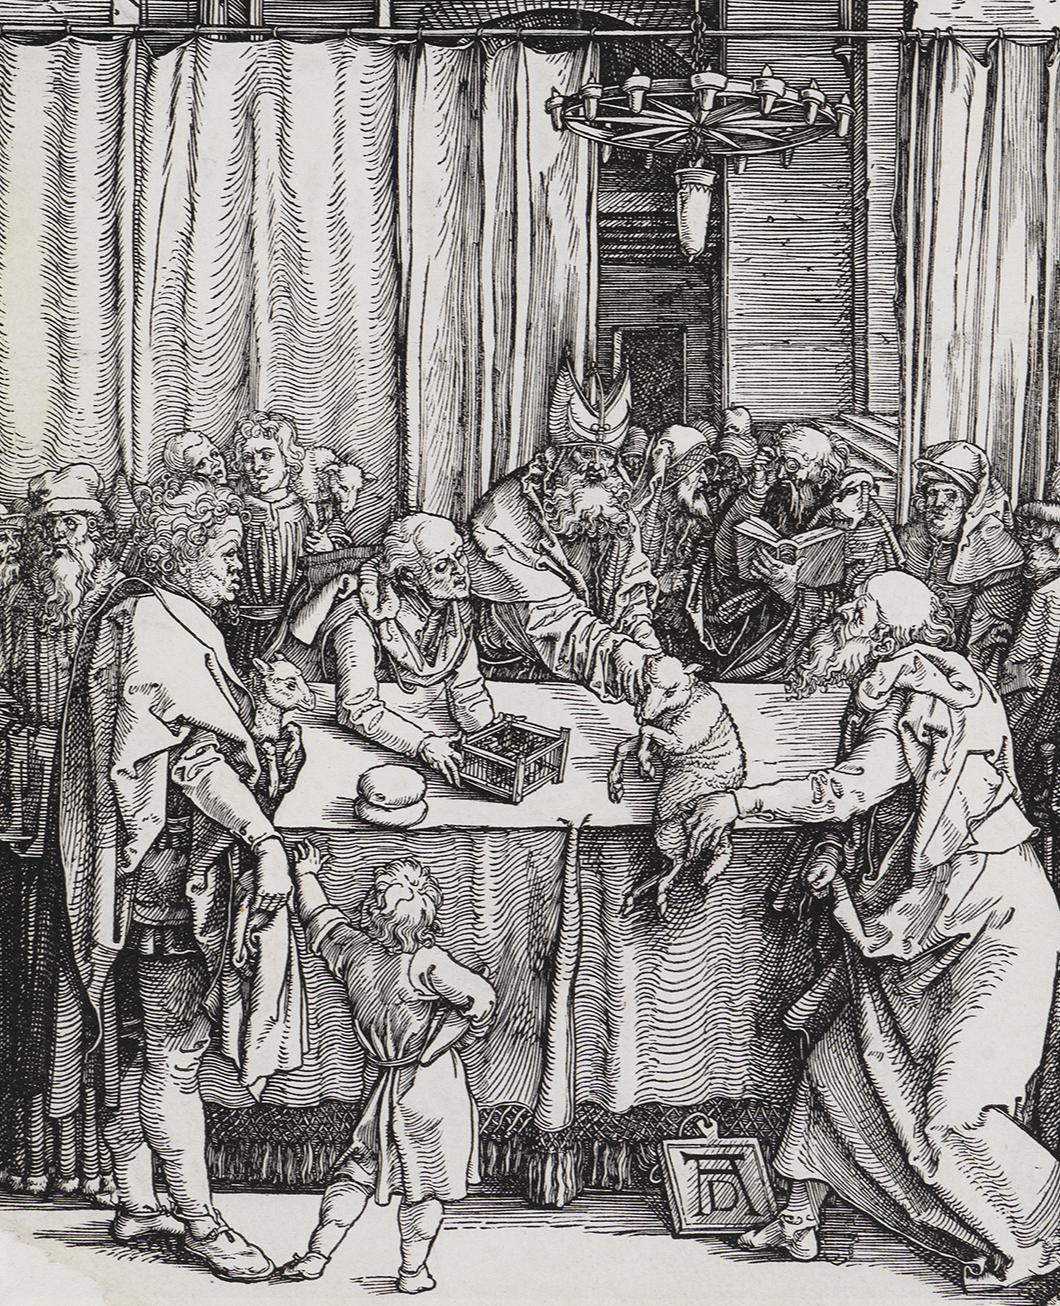 Die Zeichnung zeigt eine Gruppe von Menschen, die sich stehend um einen Tisch versammeln.